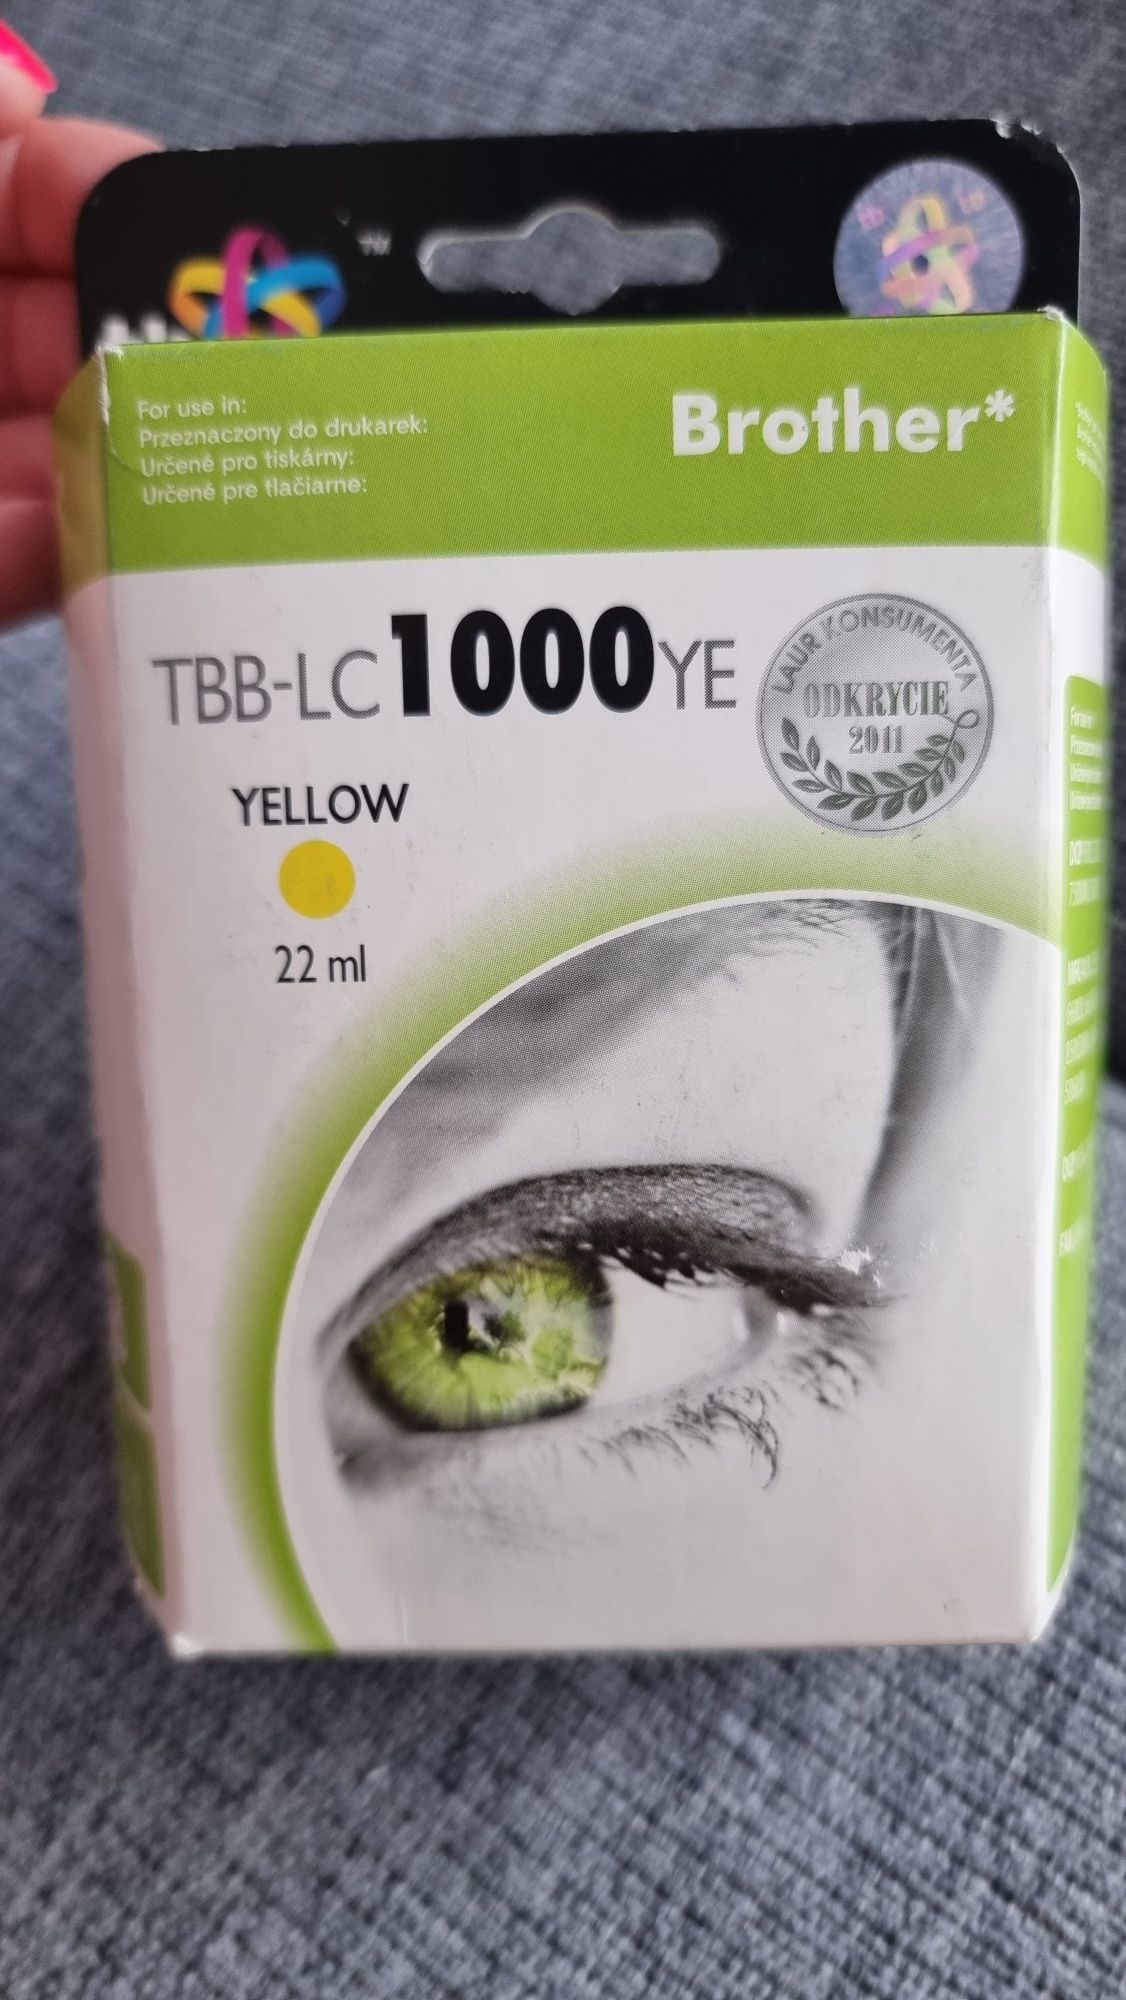 Brother tusz do drukarki TBB-LC1000YE Yellow żółty kolor 22 ml